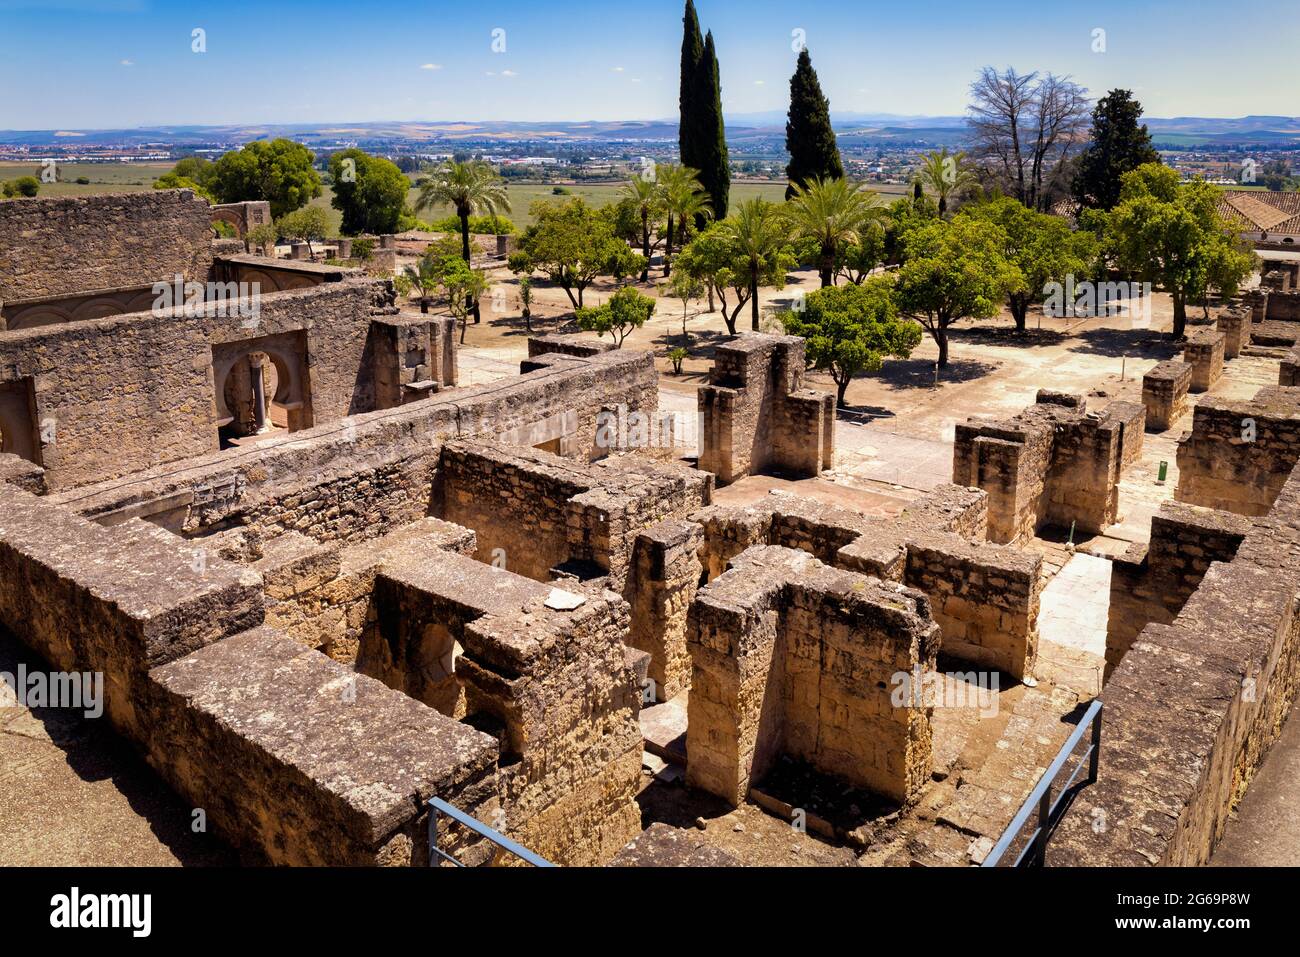 Gesamtansicht der oberen Ebene im 10. Jahrhundert befestigten Palast und Stadt Medina Azahara, auch bekannt als Madinat al-Zahra, Cordoba Provinz, Spa Stockfoto